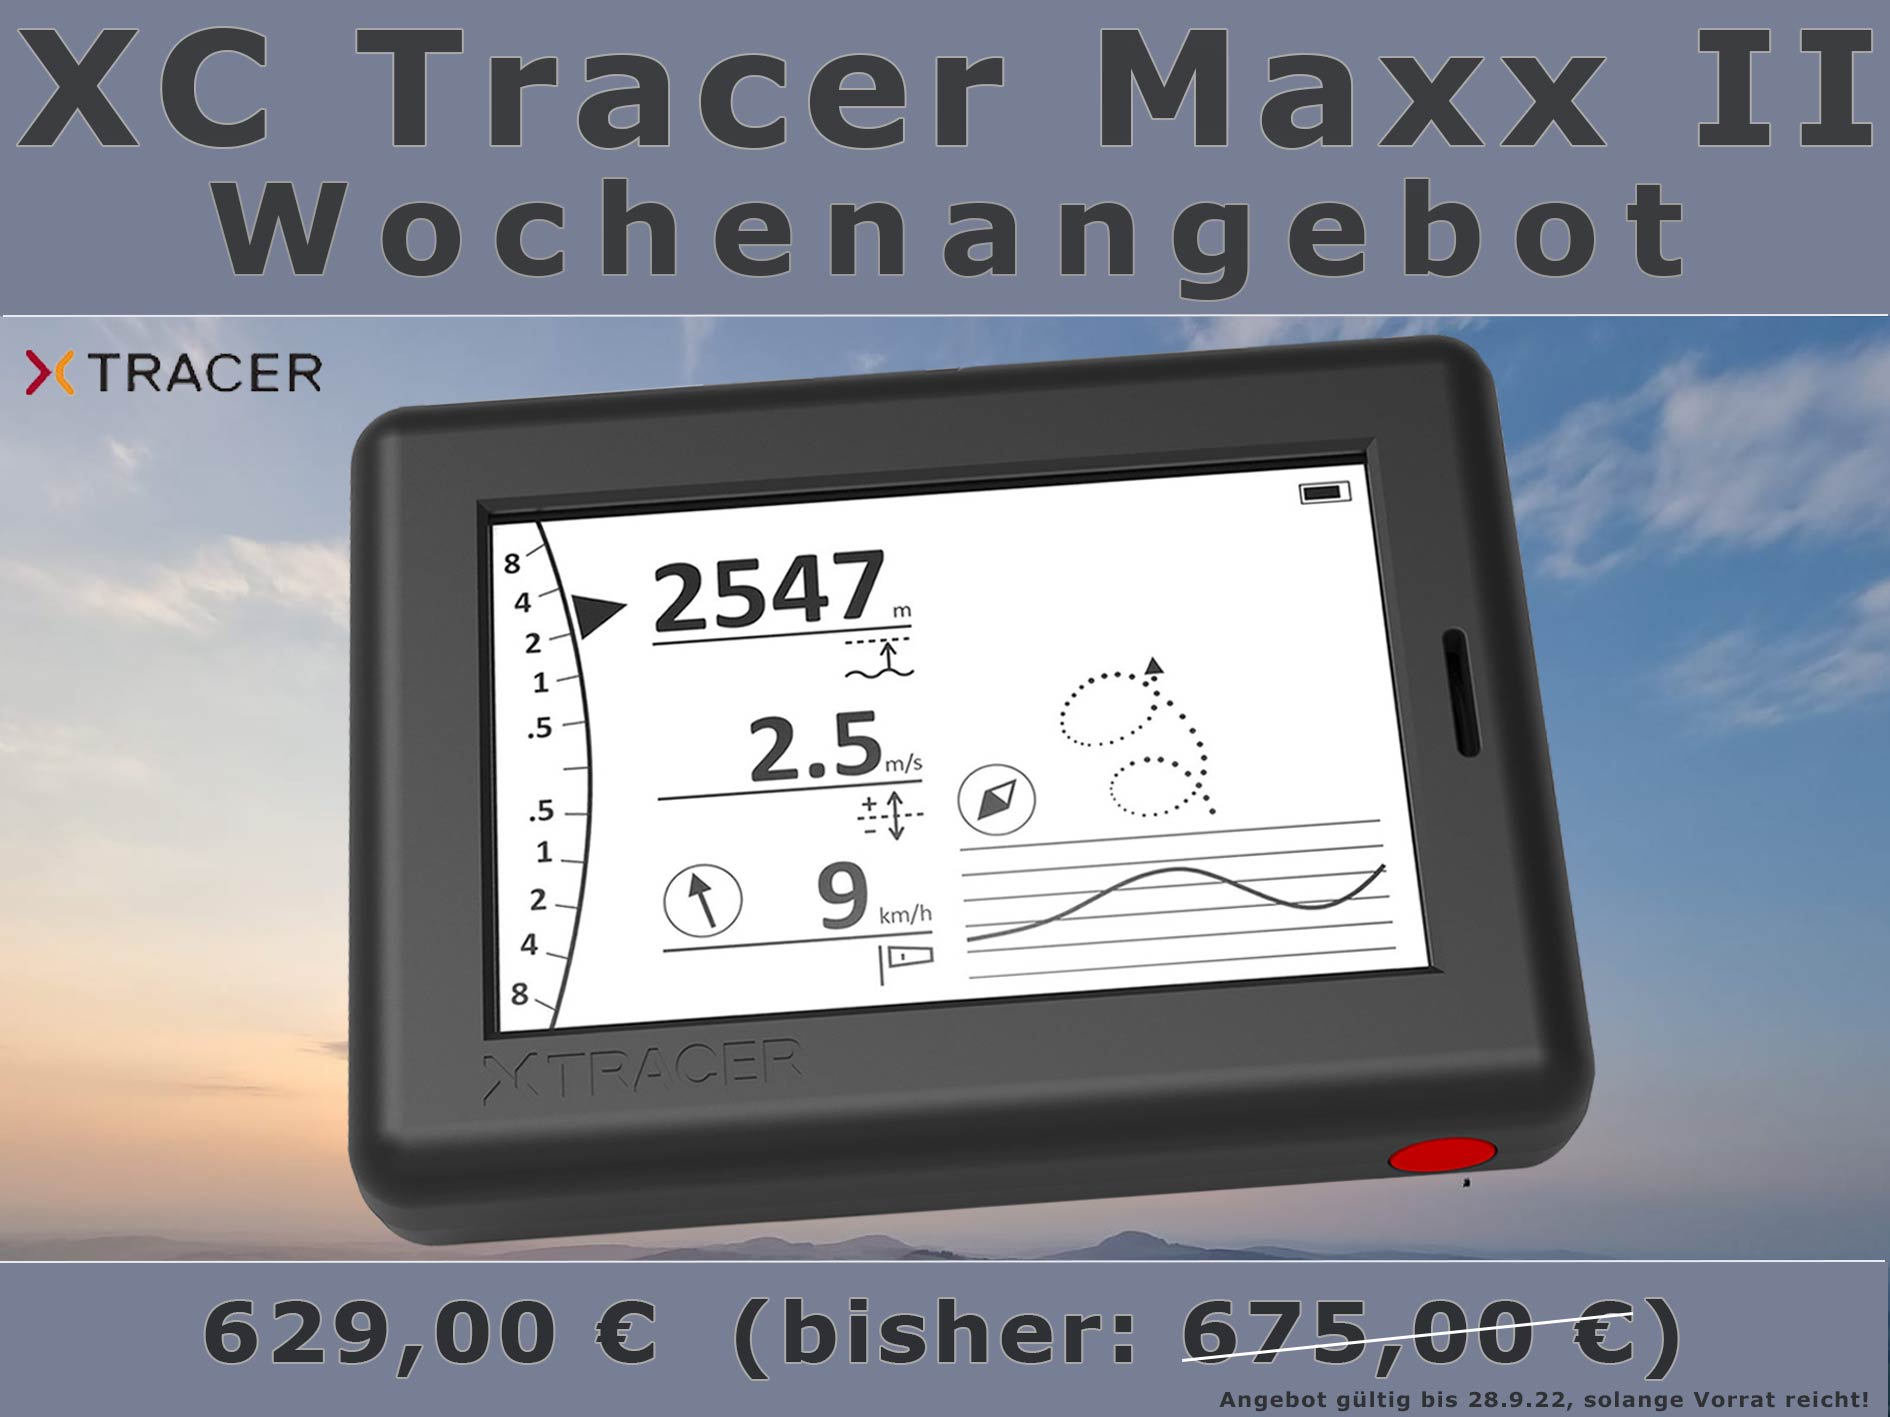 XC Tracer Maxx II